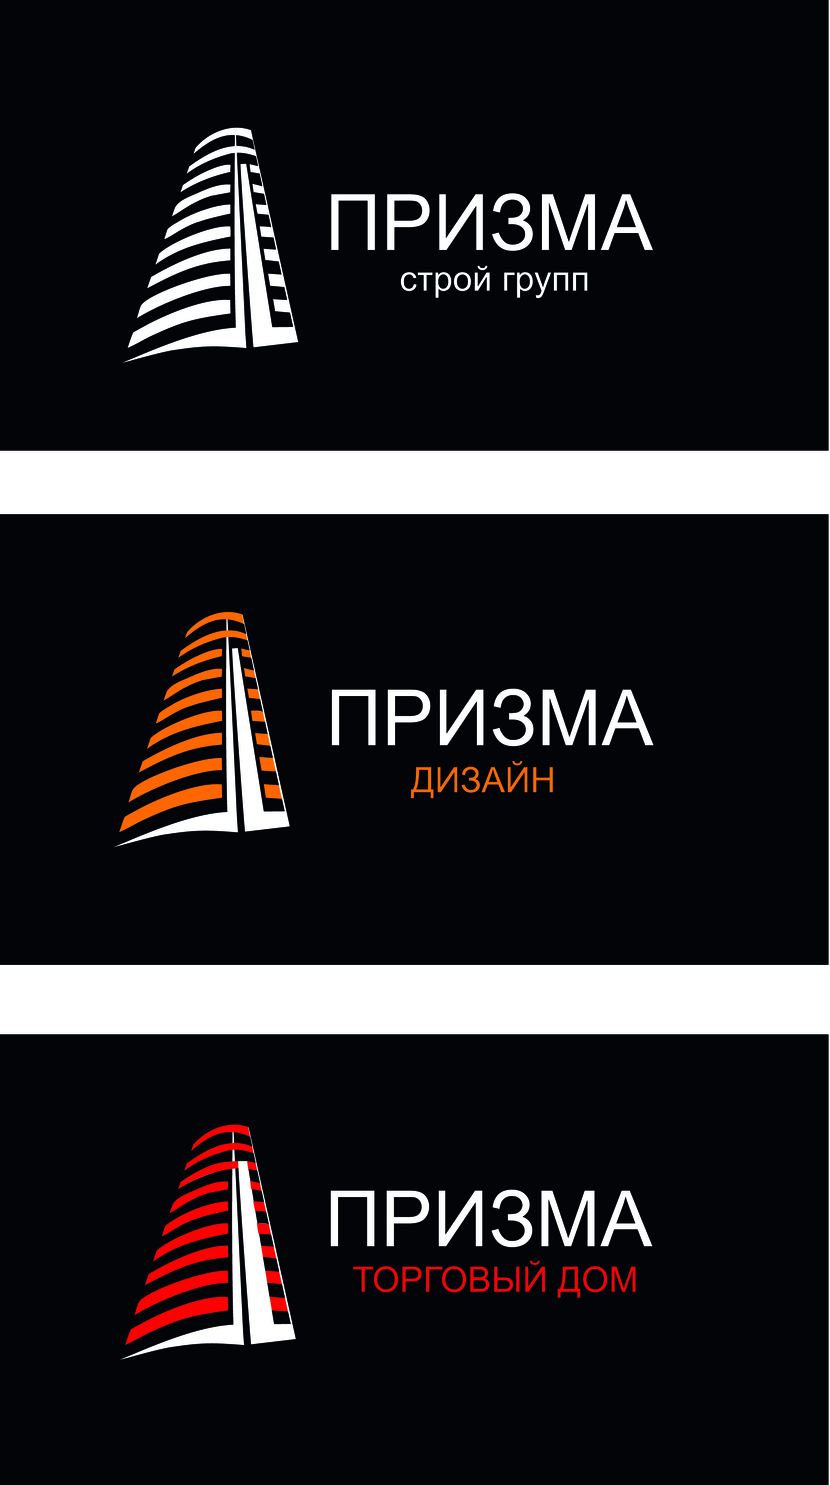 Призма на черном фоне Создание логотипа для группы строительных компаний